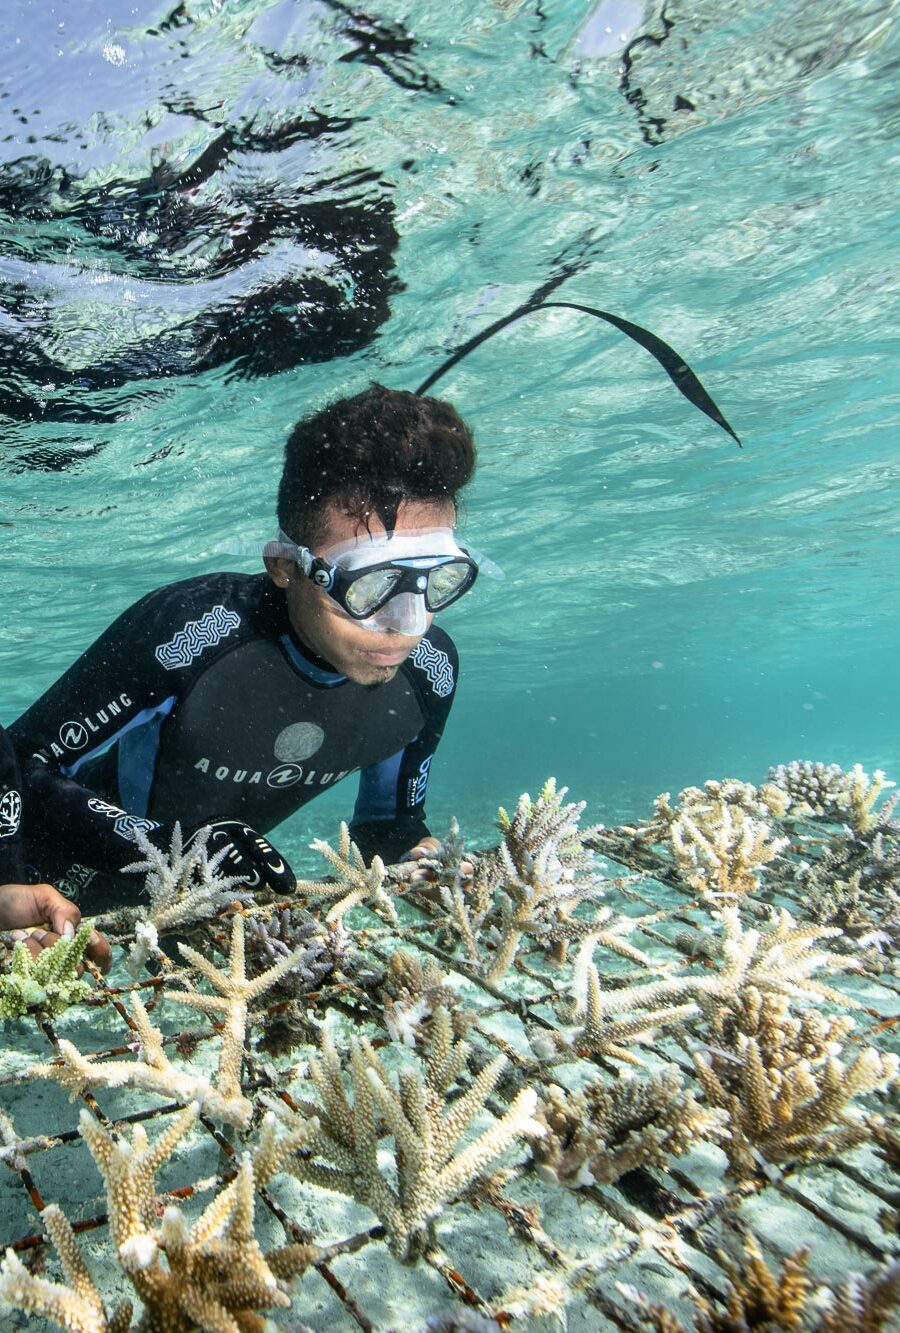 Décennie des Nations Unies pour la restauration des écosystèmes : qu’est-ce que la restauration corallienne et à quoi ça sert ?